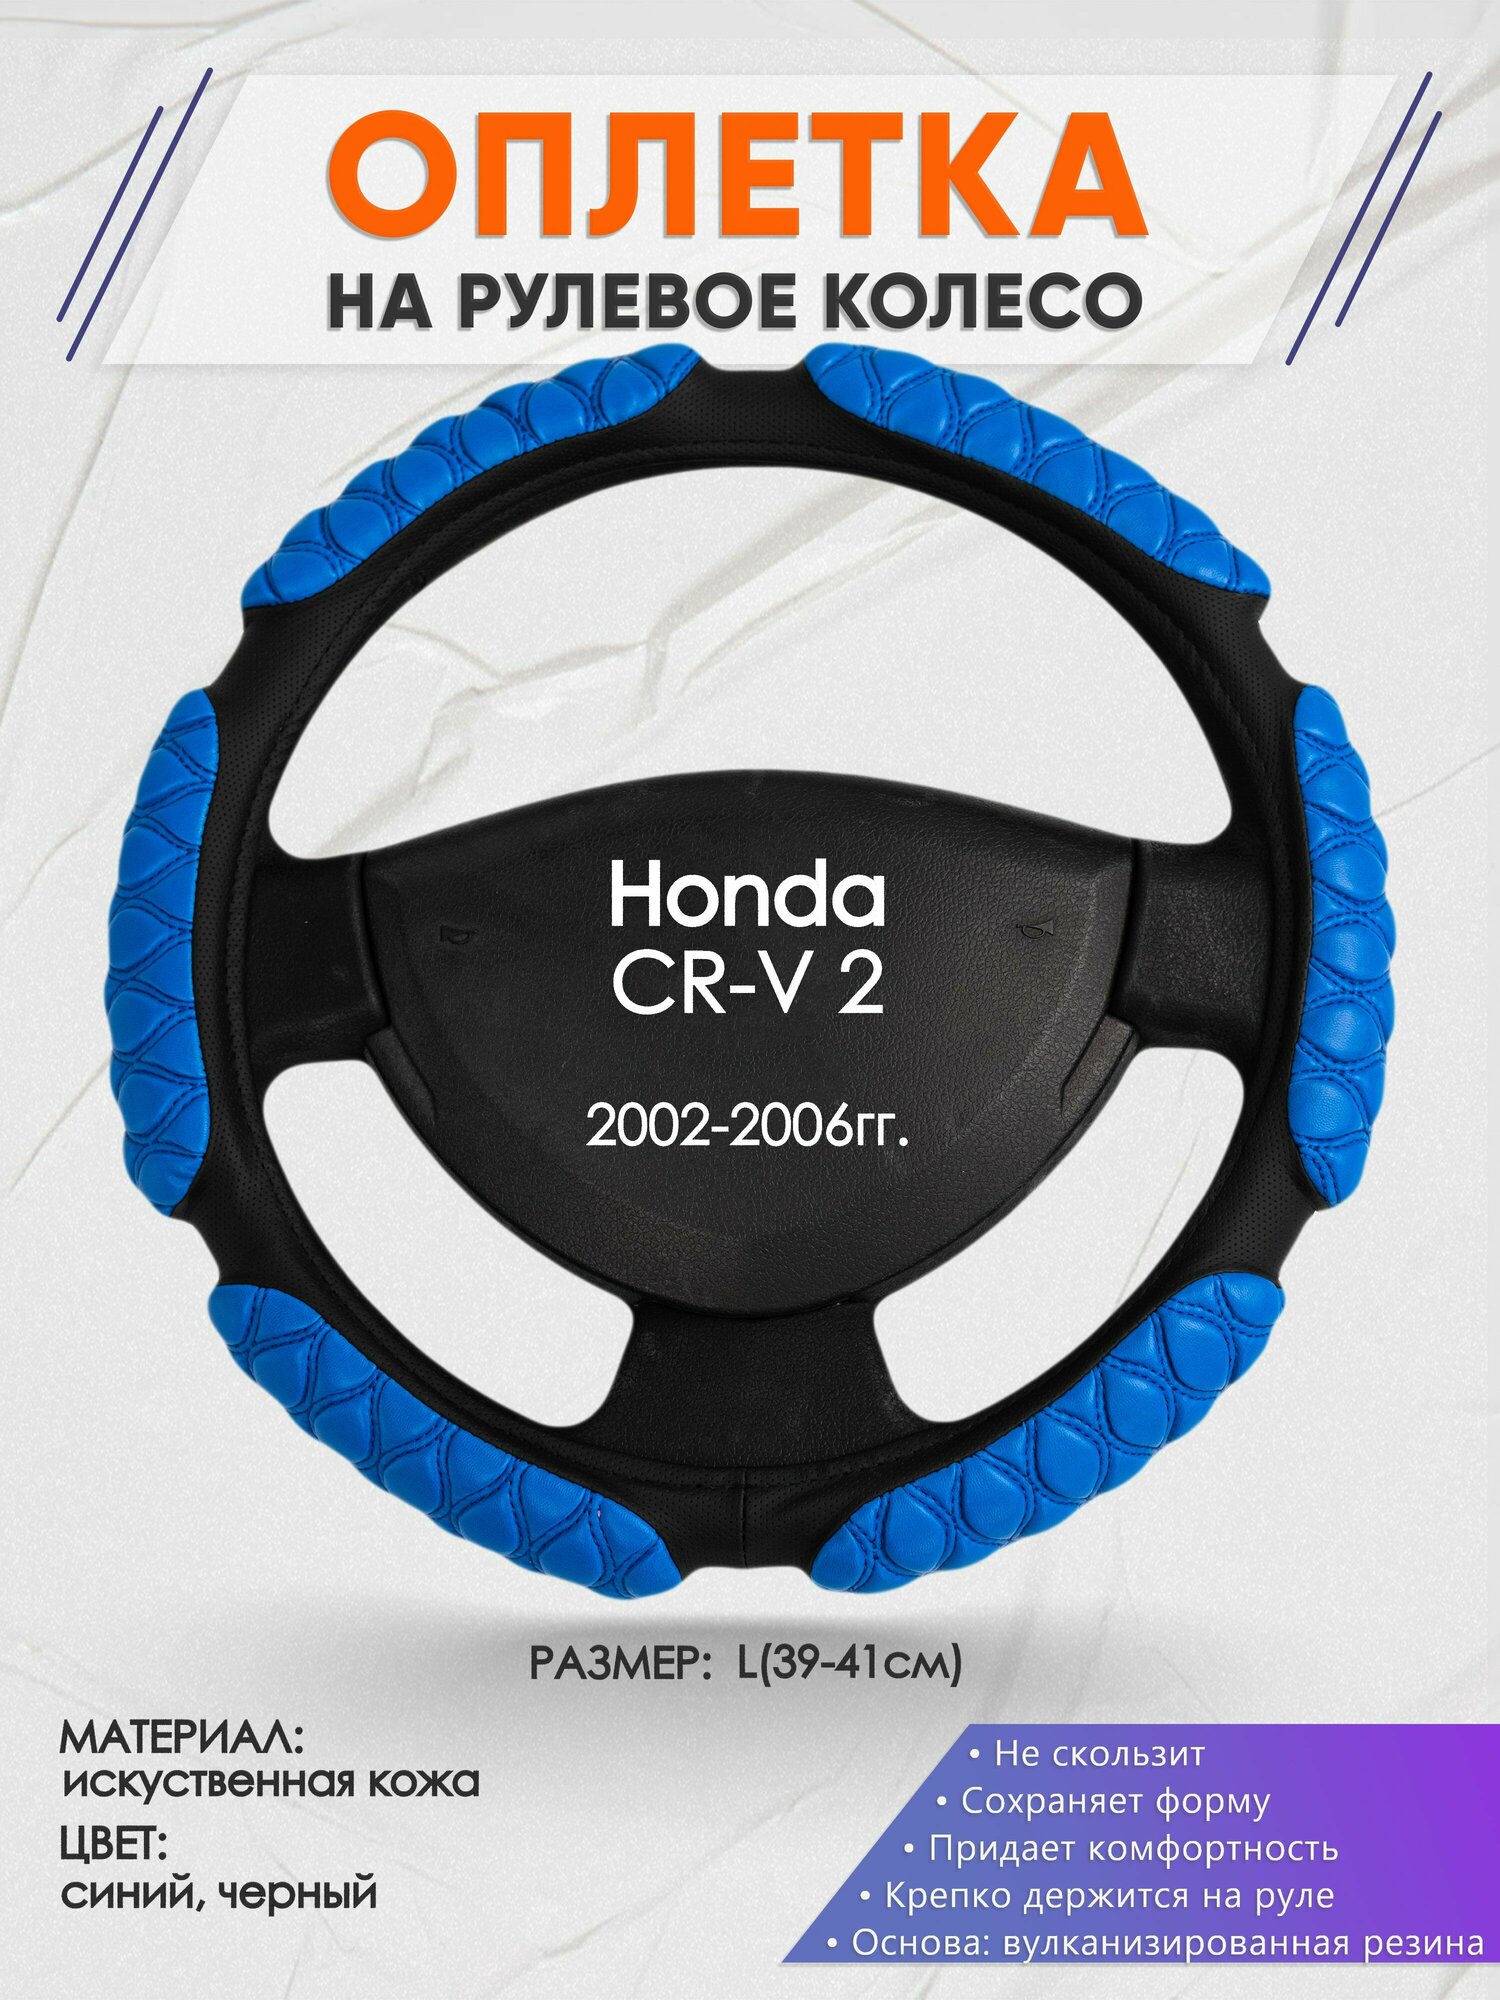 Оплетка на руль для Honda CR-V 2(Хонда срв 2) 2002-2006, L(39-41см), Искусственная кожа 02